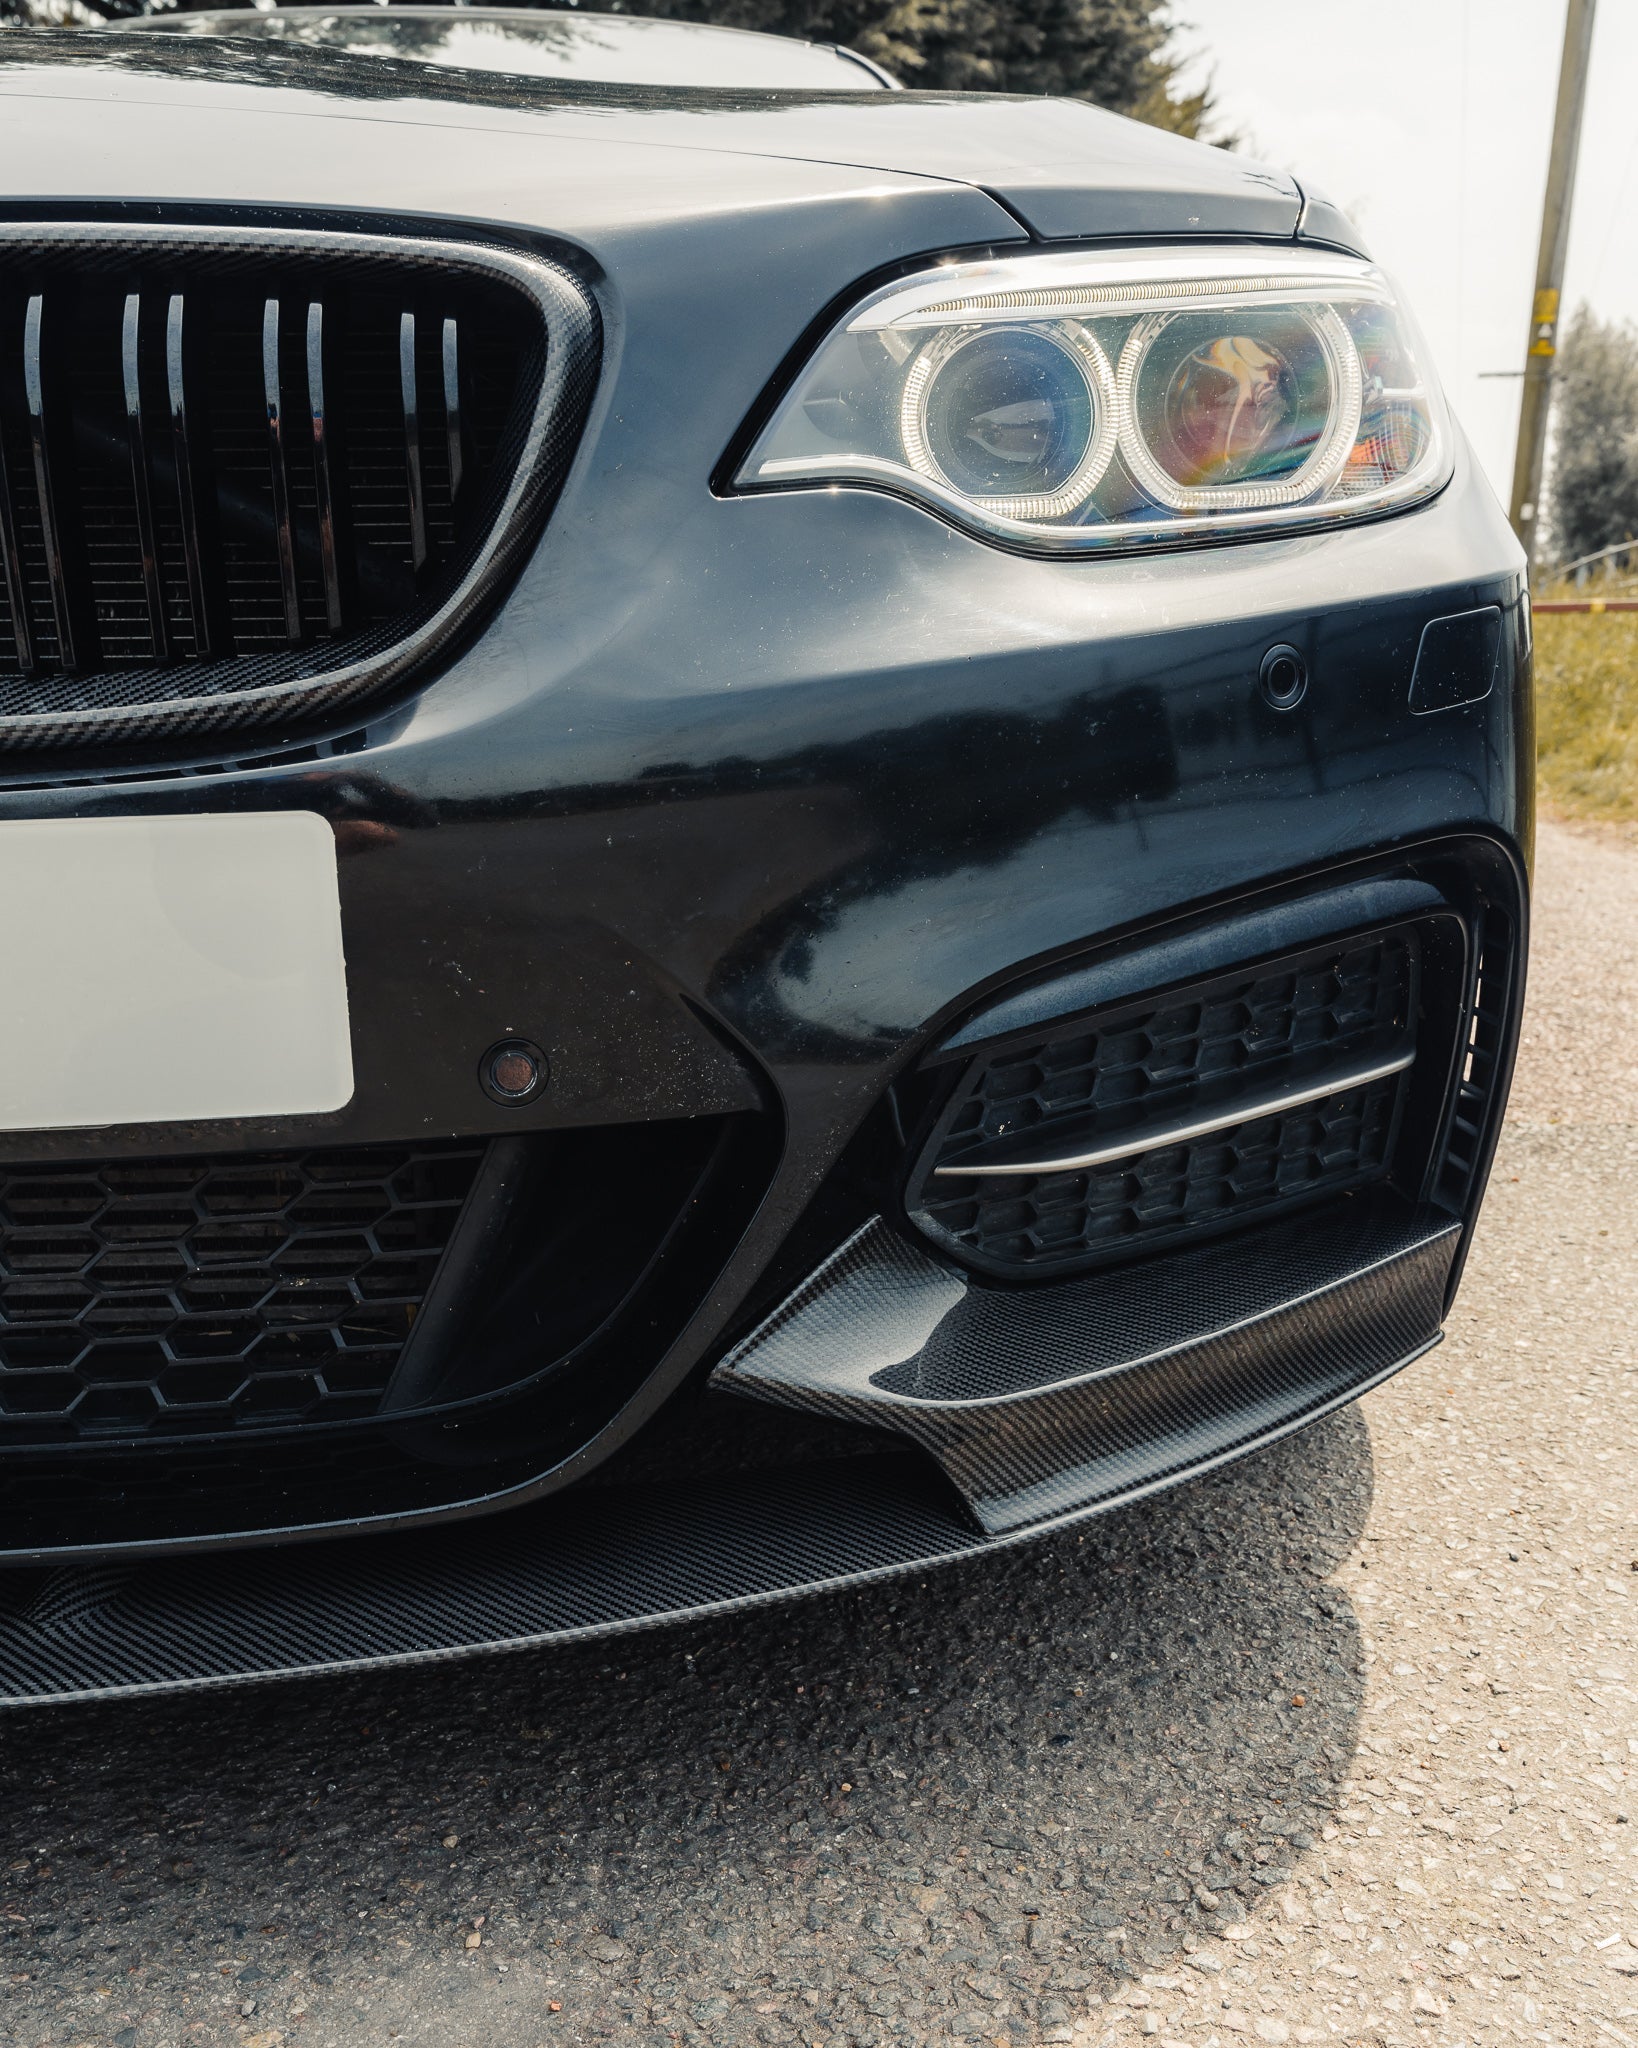 Carbon Fibre Body Kit for BMW 2 Series, M235i & M240i (2014-2020, F22)